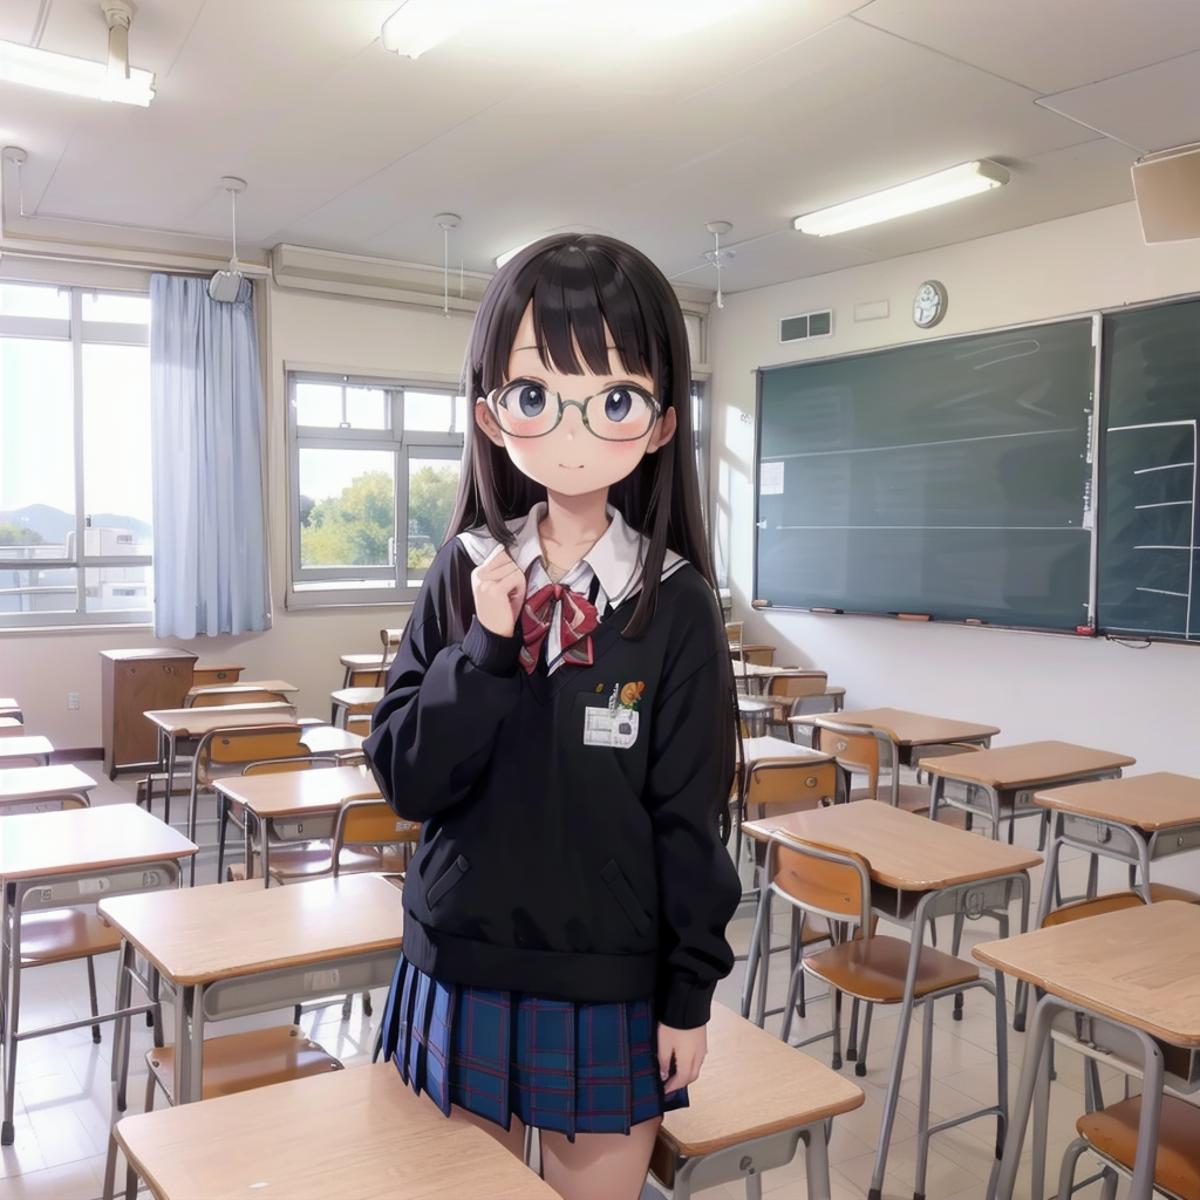 学校の教室 / Japanese School Classroom SD15 image by swingwings